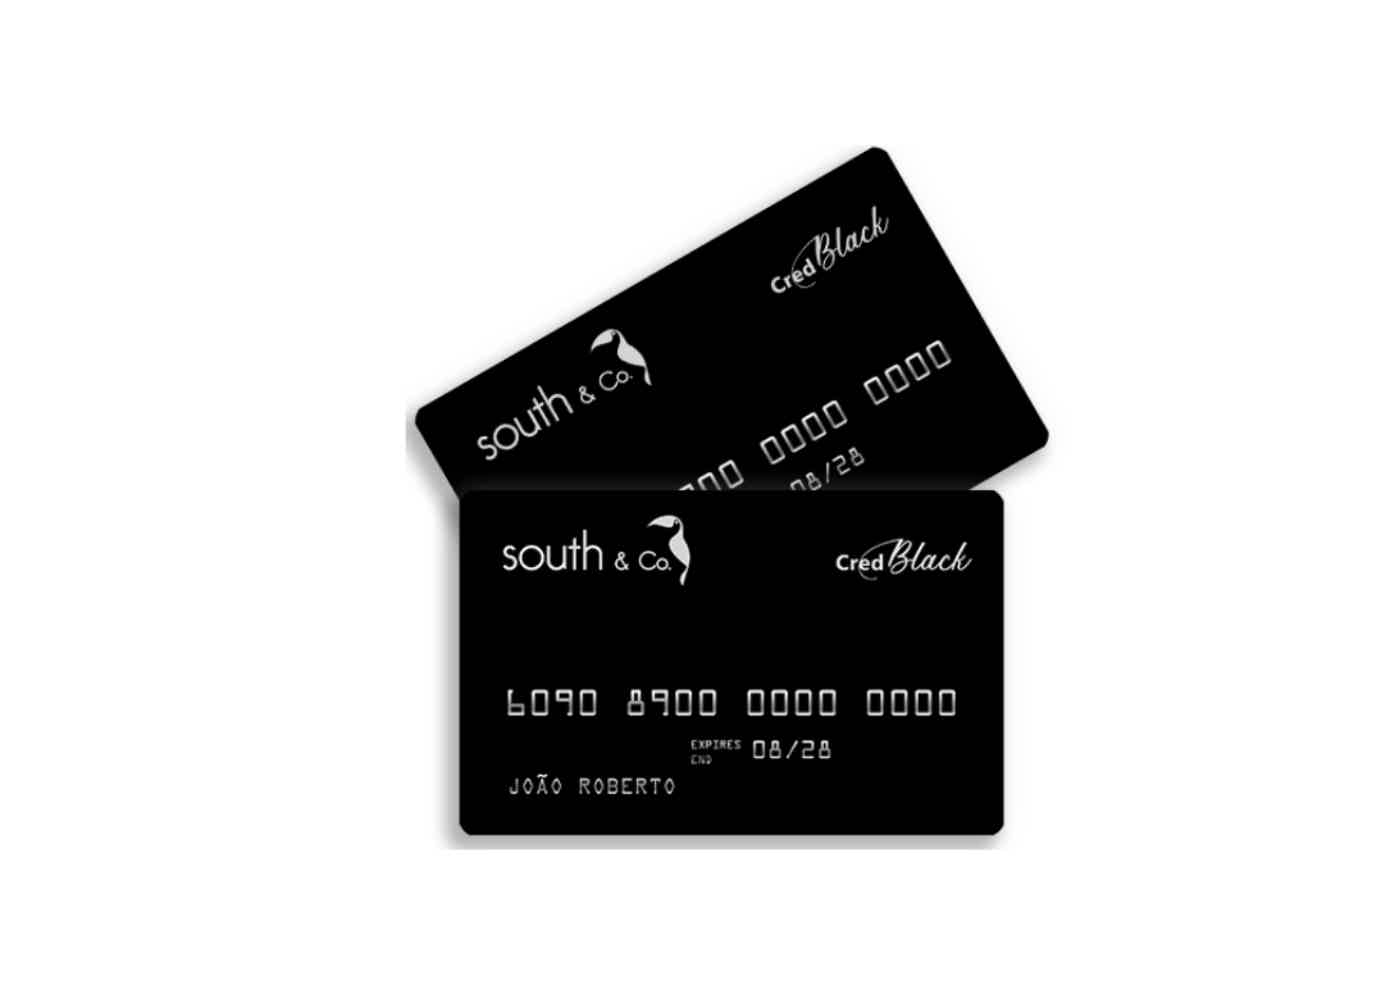 Cartão de crédito Cred Black preto com informações em prata